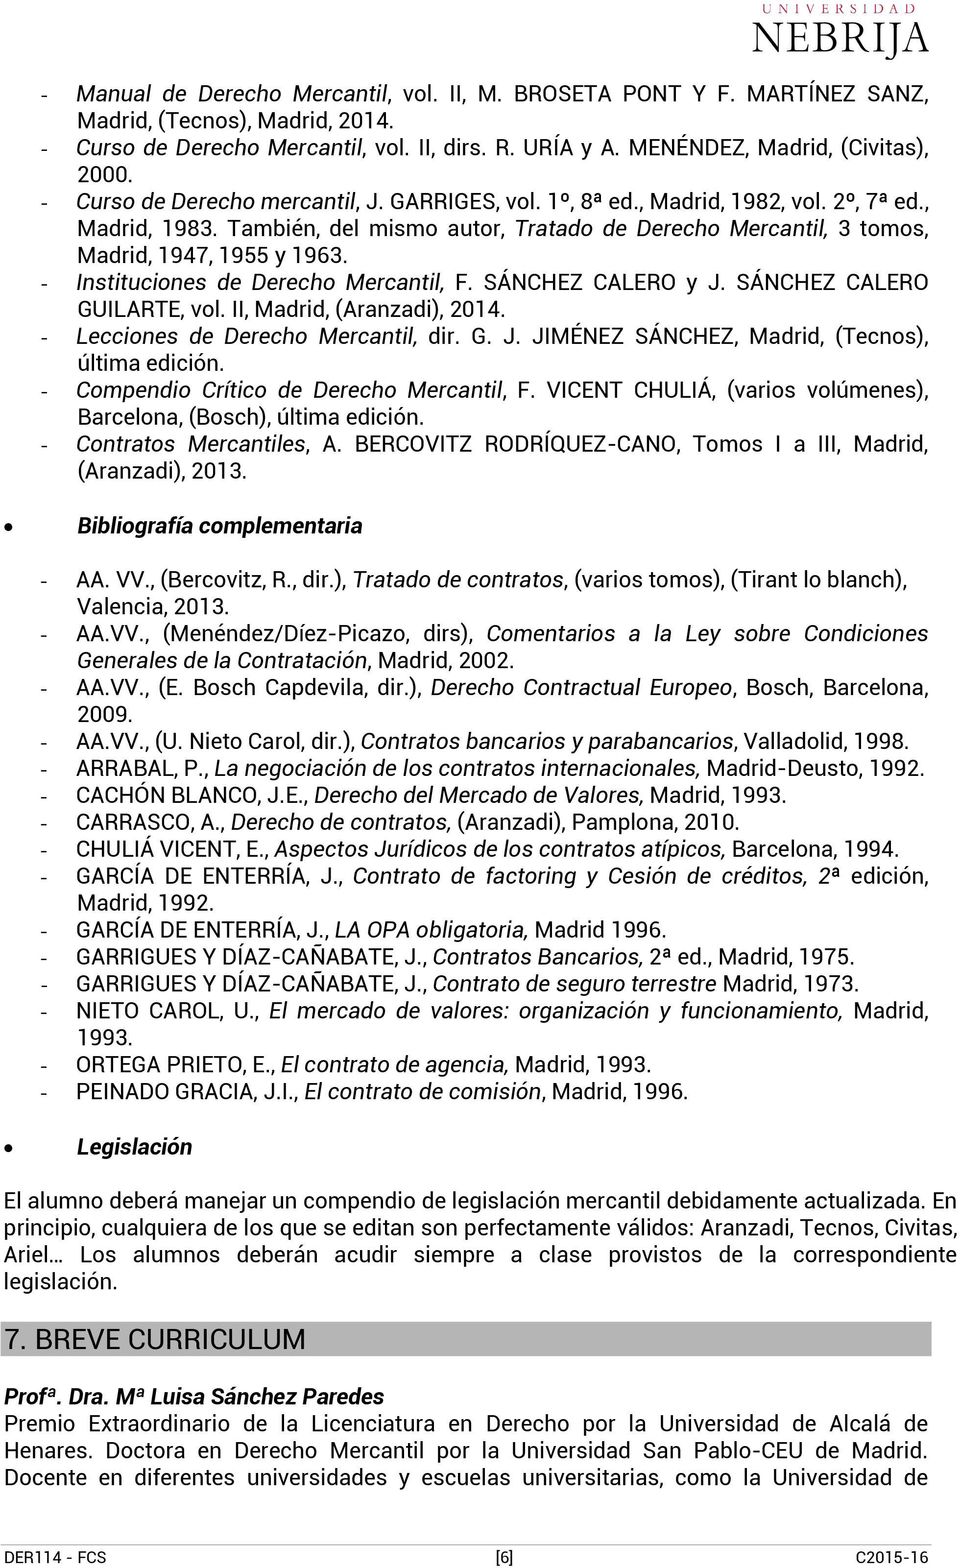 - Instituciones de Derecho Mercantil, F. SÁNCHEZ CALERO y J. SÁNCHEZ CALERO GUILARTE, vol. II, Madrid, (Aranzadi), 2014. - Lecciones de Derecho Mercantil, dir. G. J. JIMÉNEZ SÁNCHEZ, Madrid, (Tecnos), última edición.